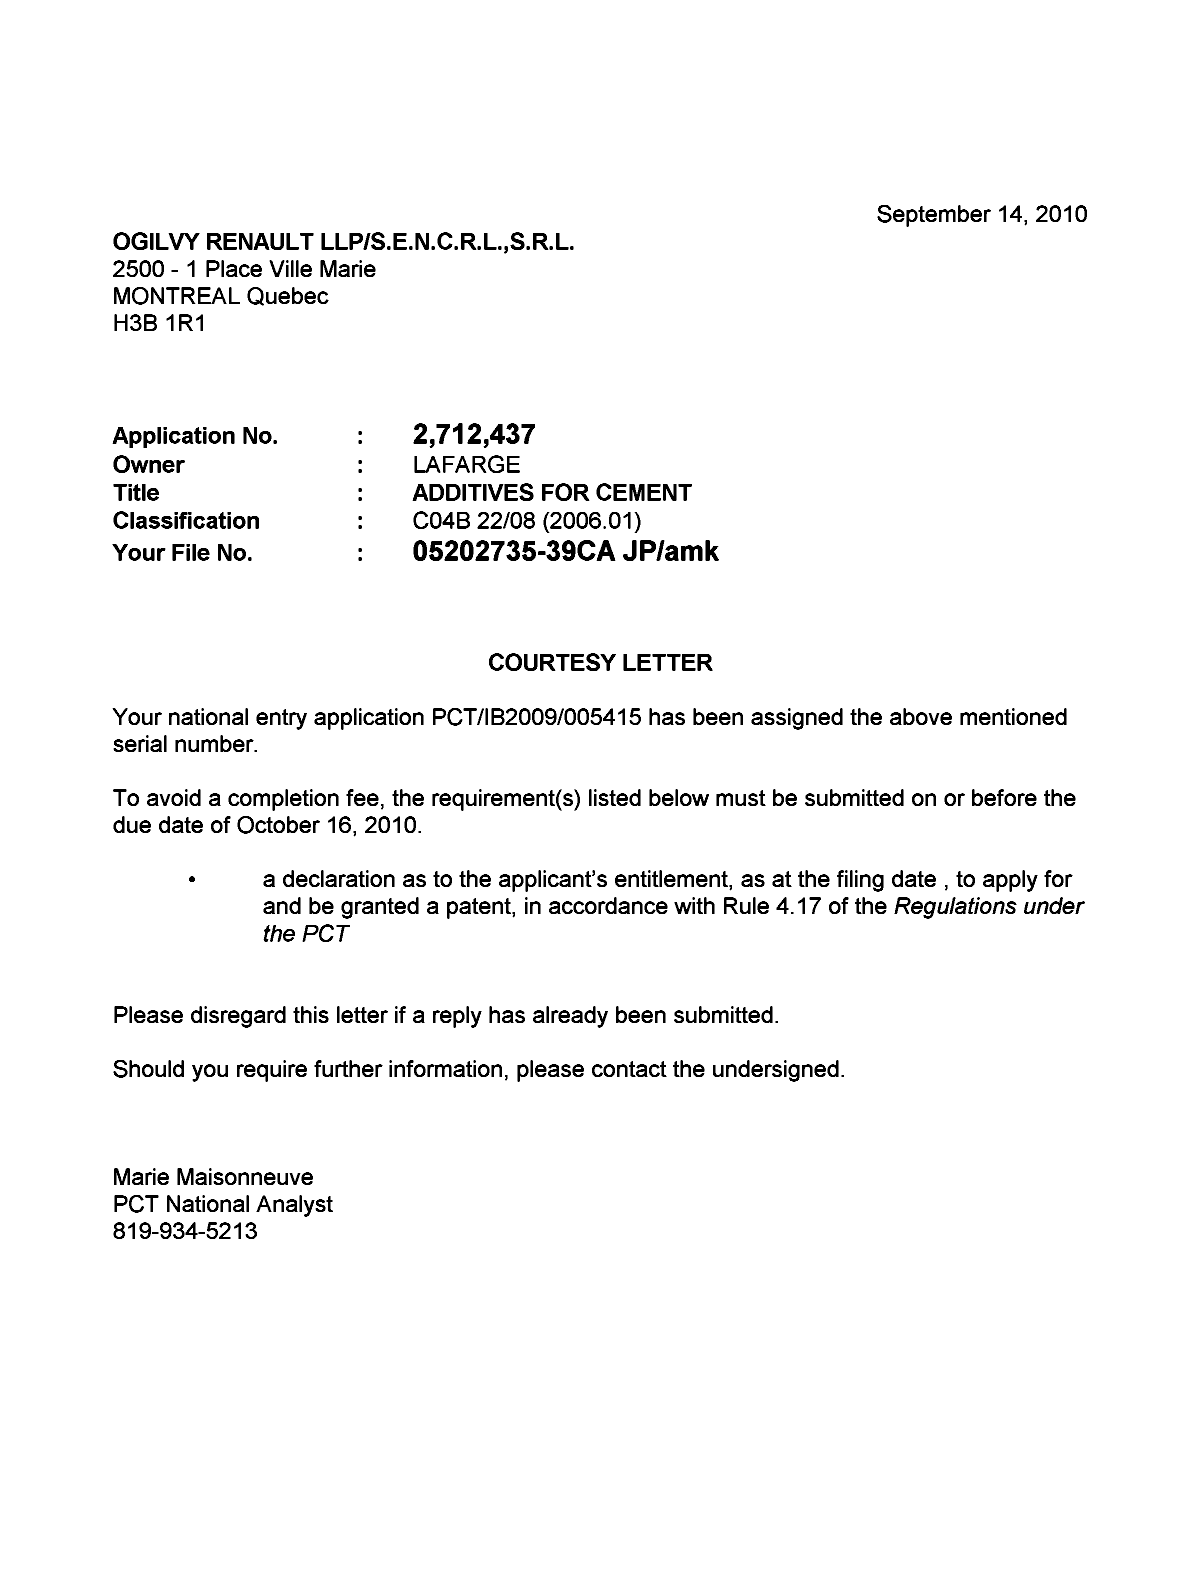 Document de brevet canadien 2712437. Correspondance 20100914. Image 1 de 1